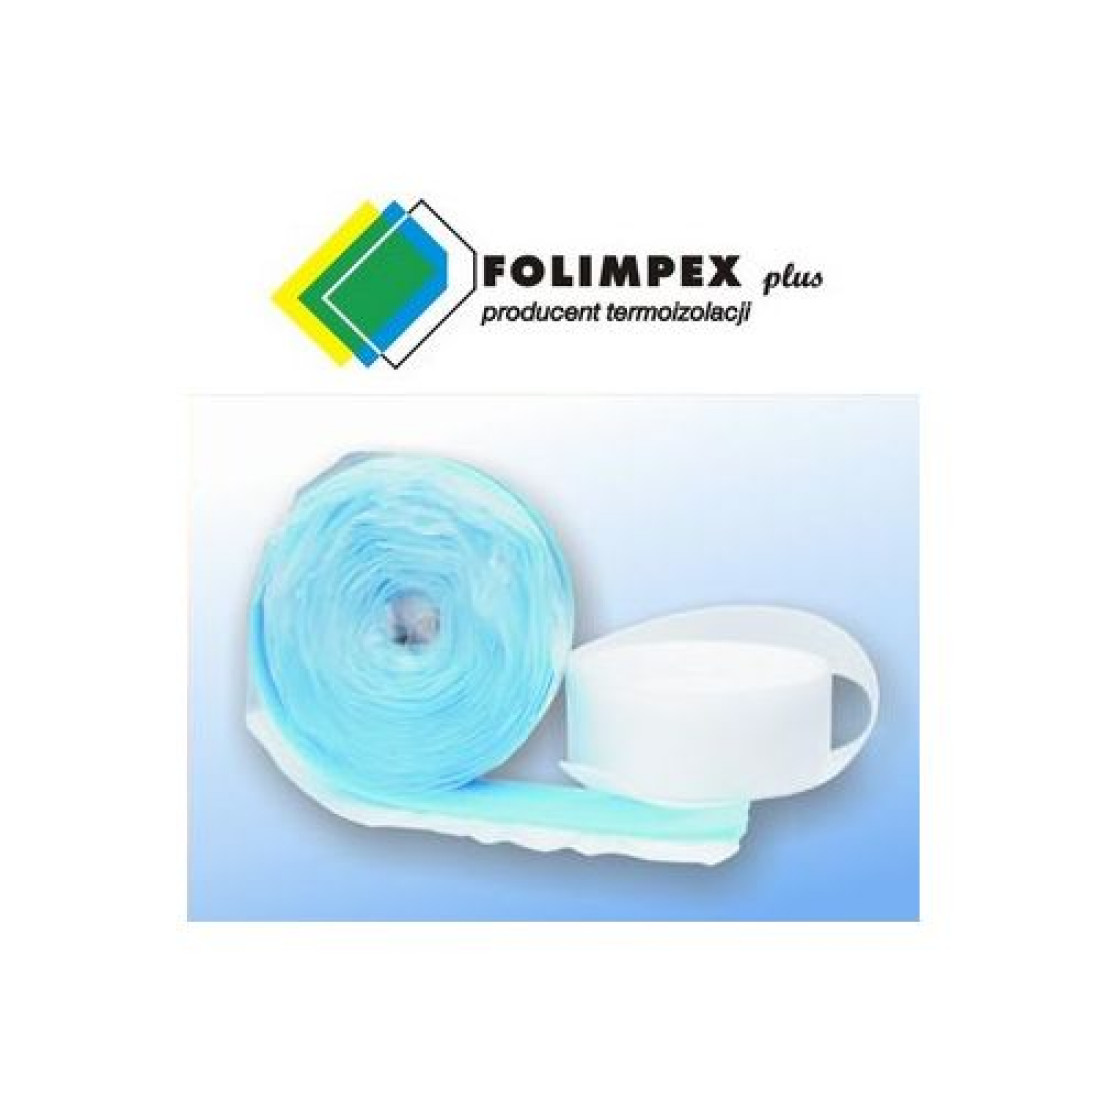 Pasy dylatacyjne producenta termoizolacji FOLIMPEX plus